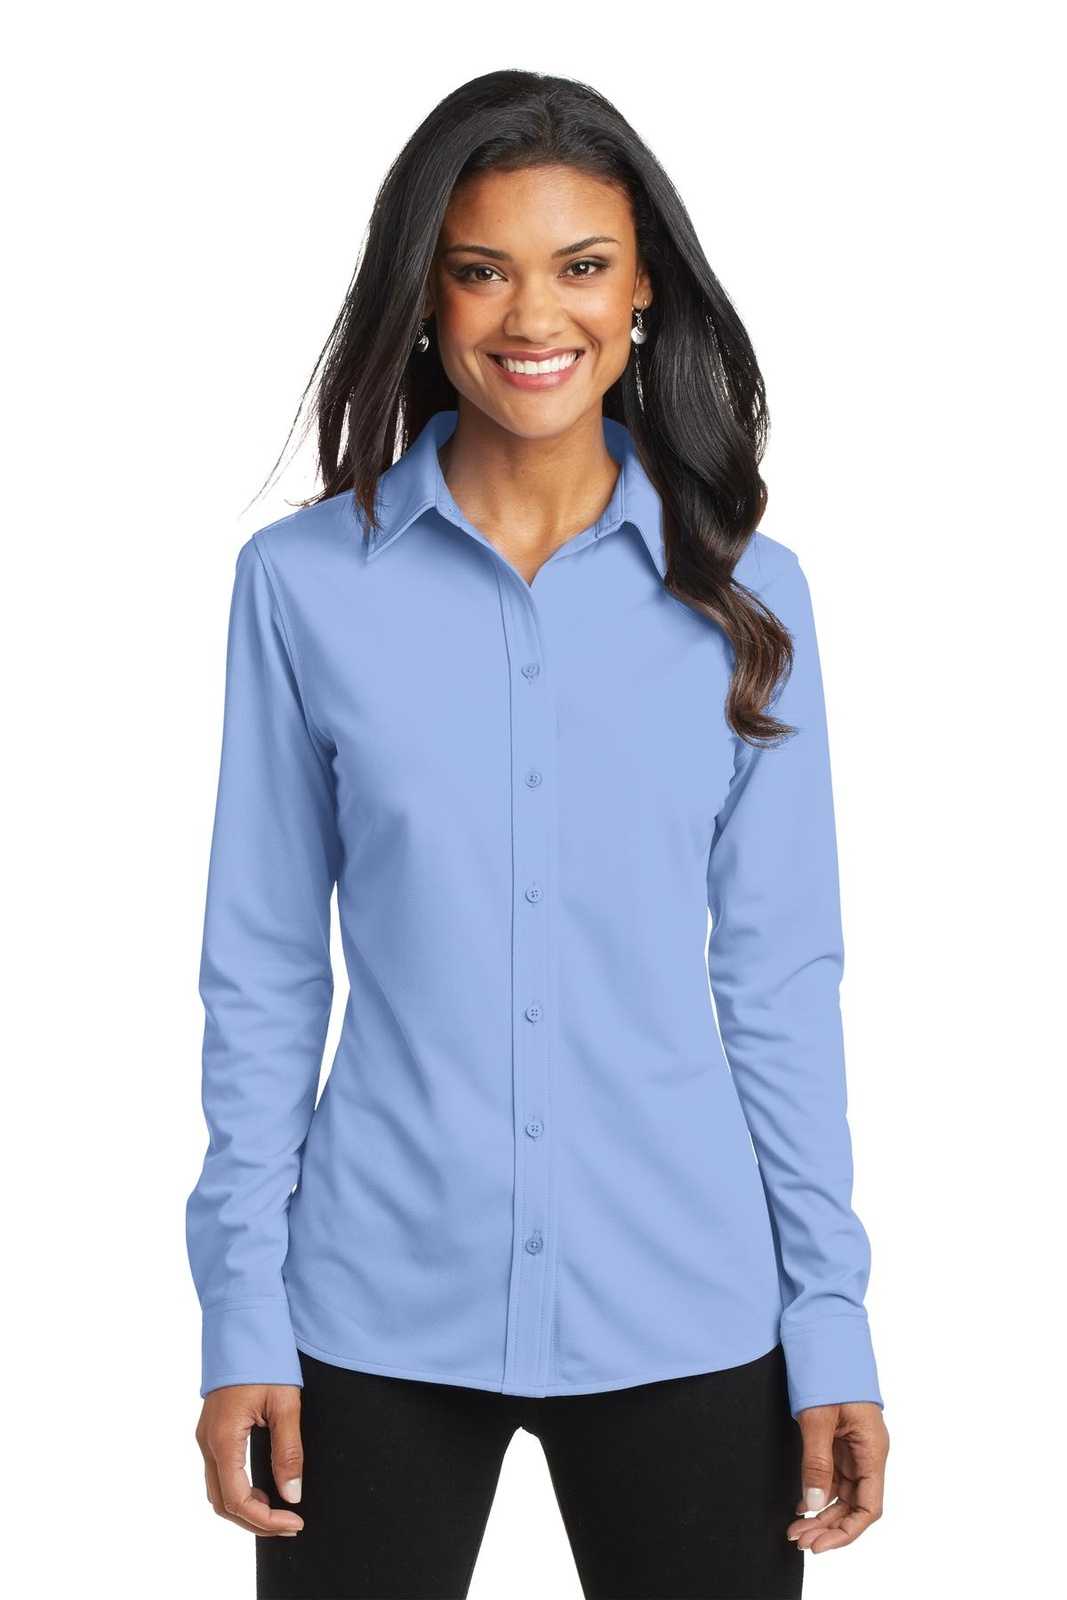 Port Authority L570 Ladies Dimension Knit Dress Shirt - Dress Shirt Blue - HIT a Double - 1